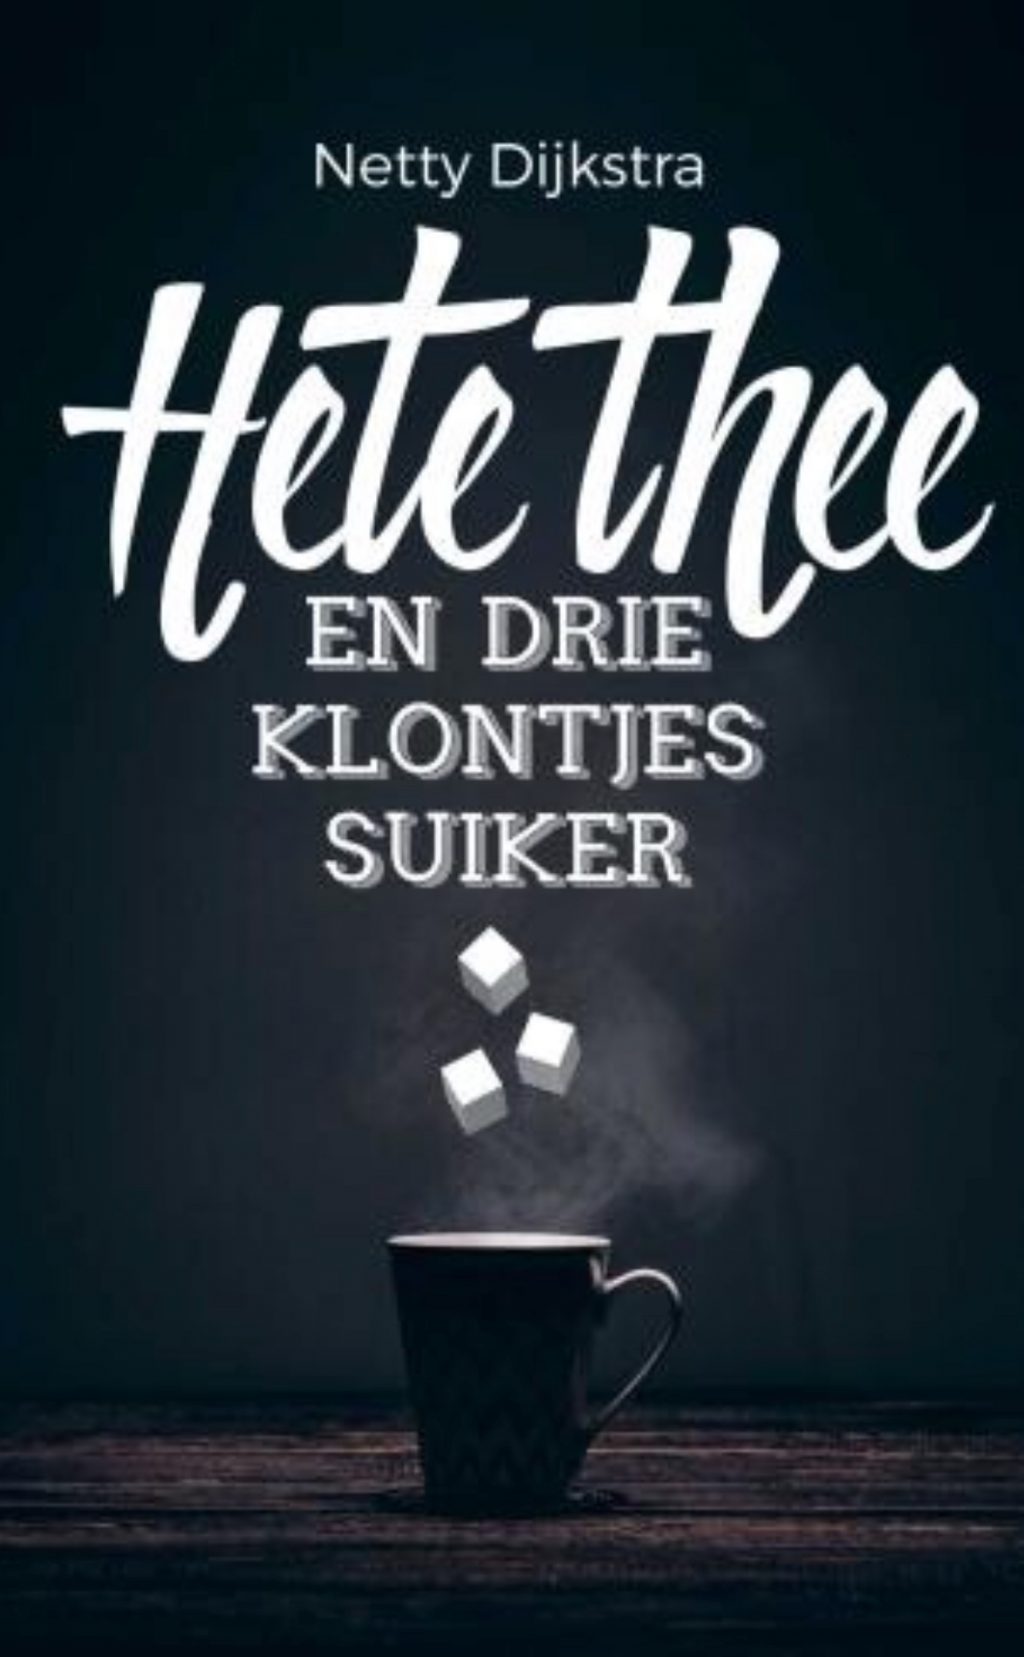 Netty Dijkstra-Geuze heeft twee zoons met autisme. Ze beschrijft in haar boek Hete thee en drie klontjes suiker hoe alles haar teveel wordt.